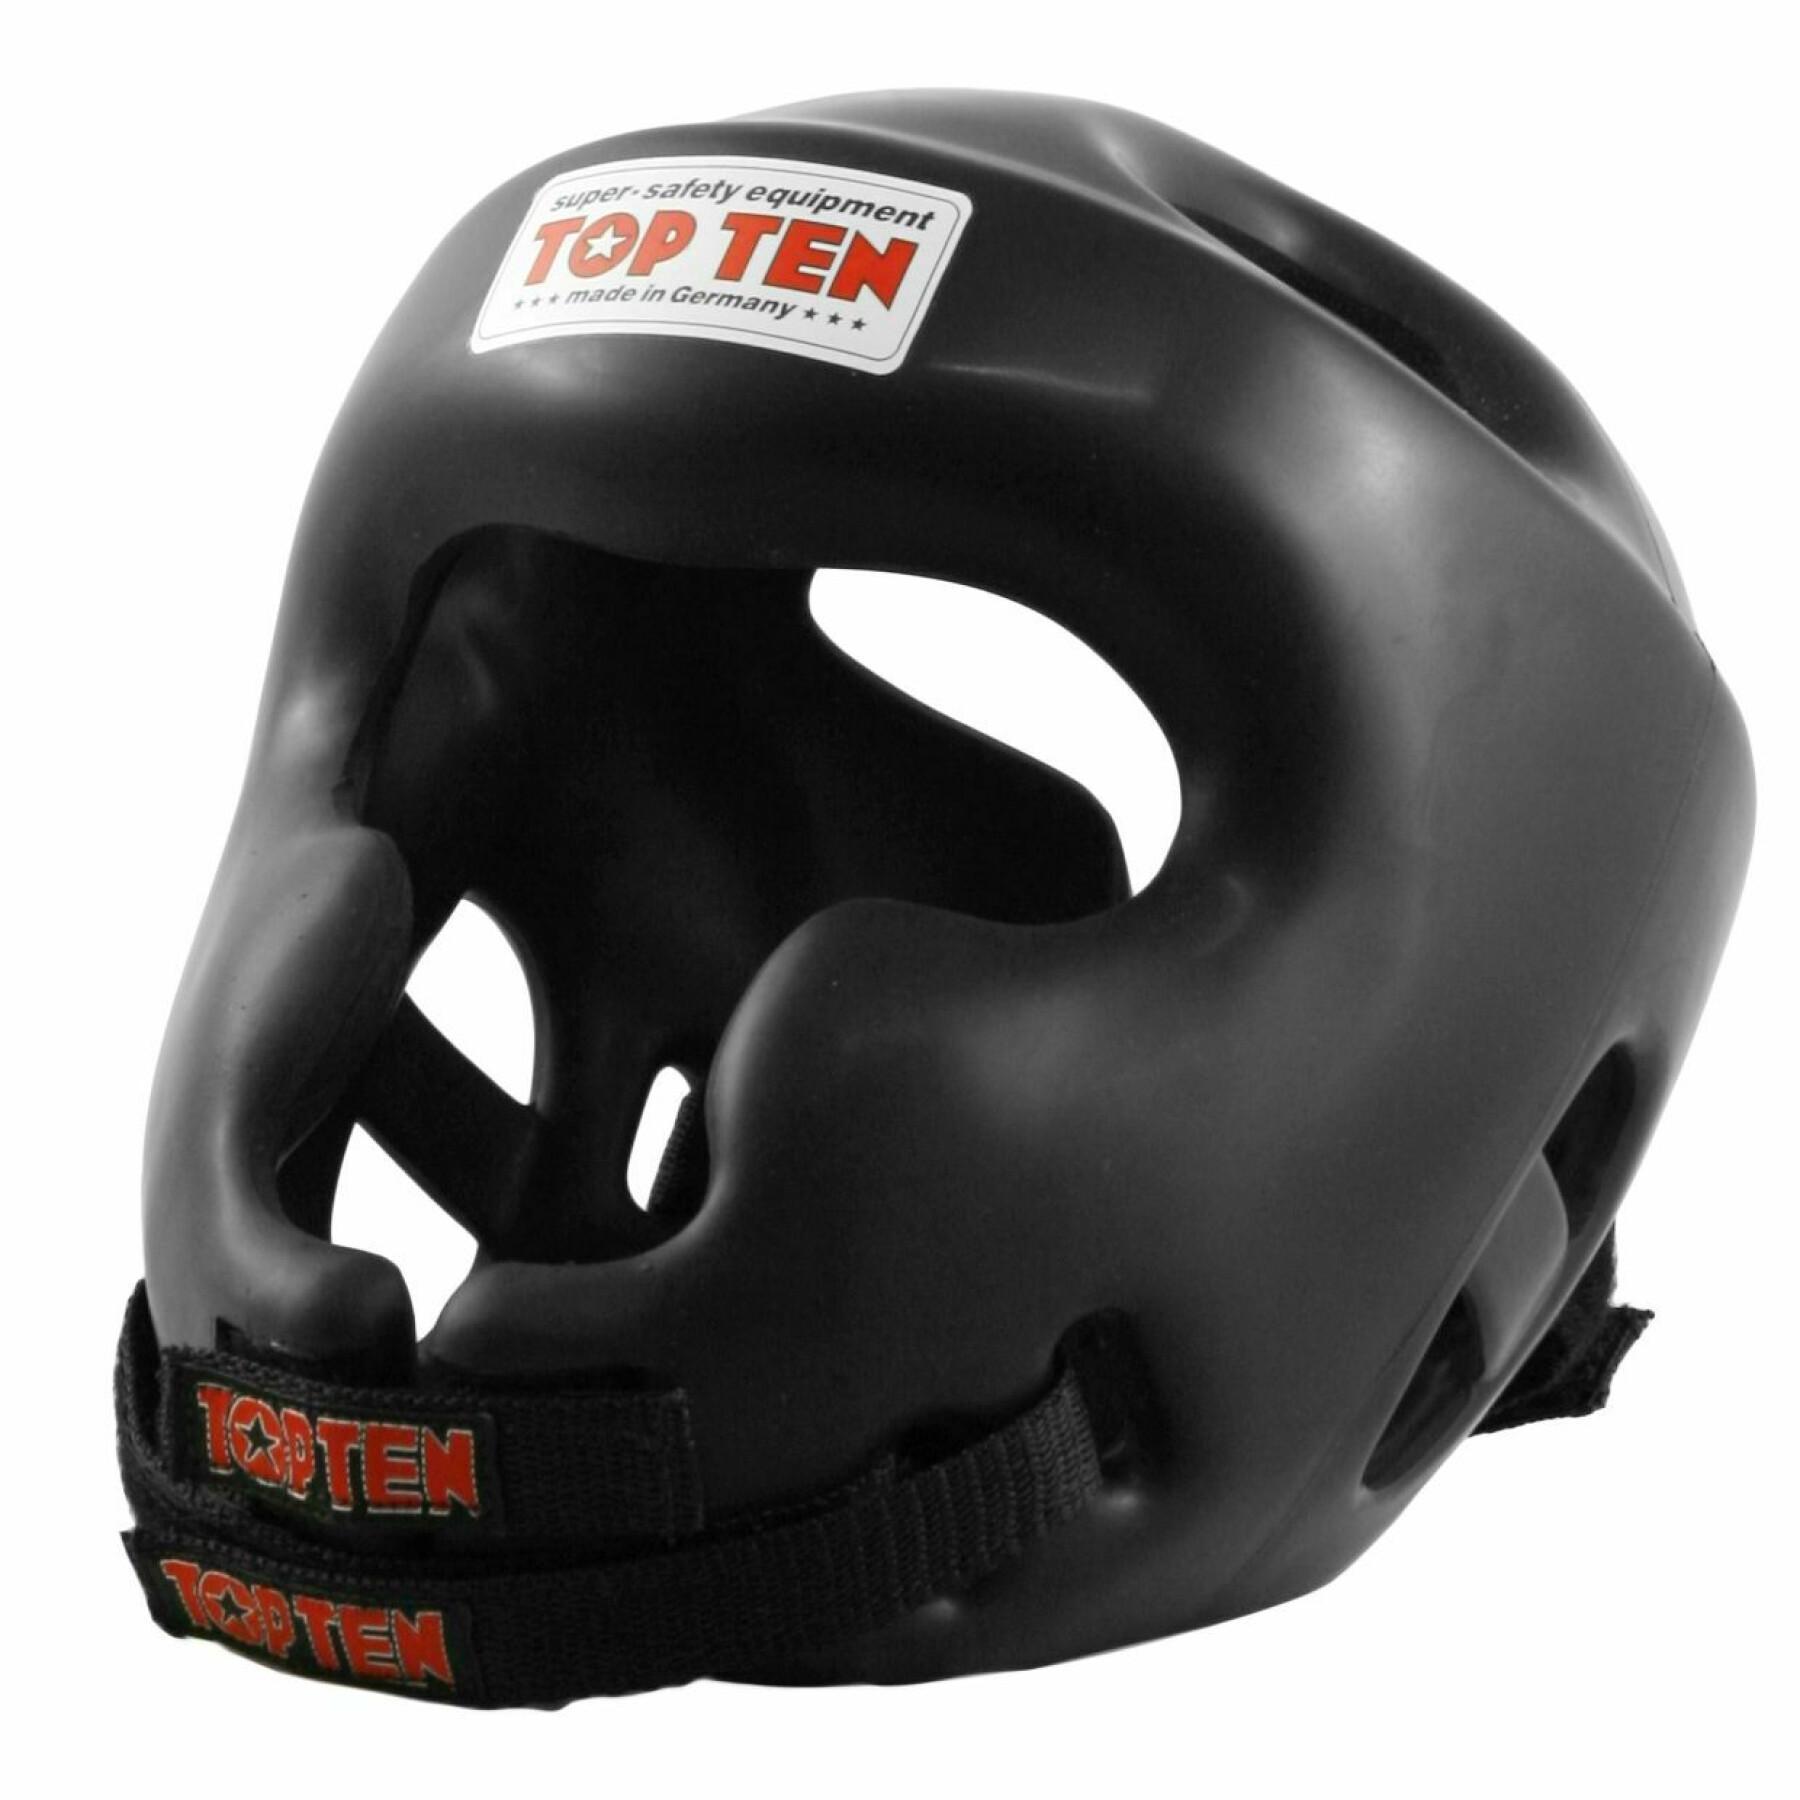 Boxing helmet Top Ten full protection